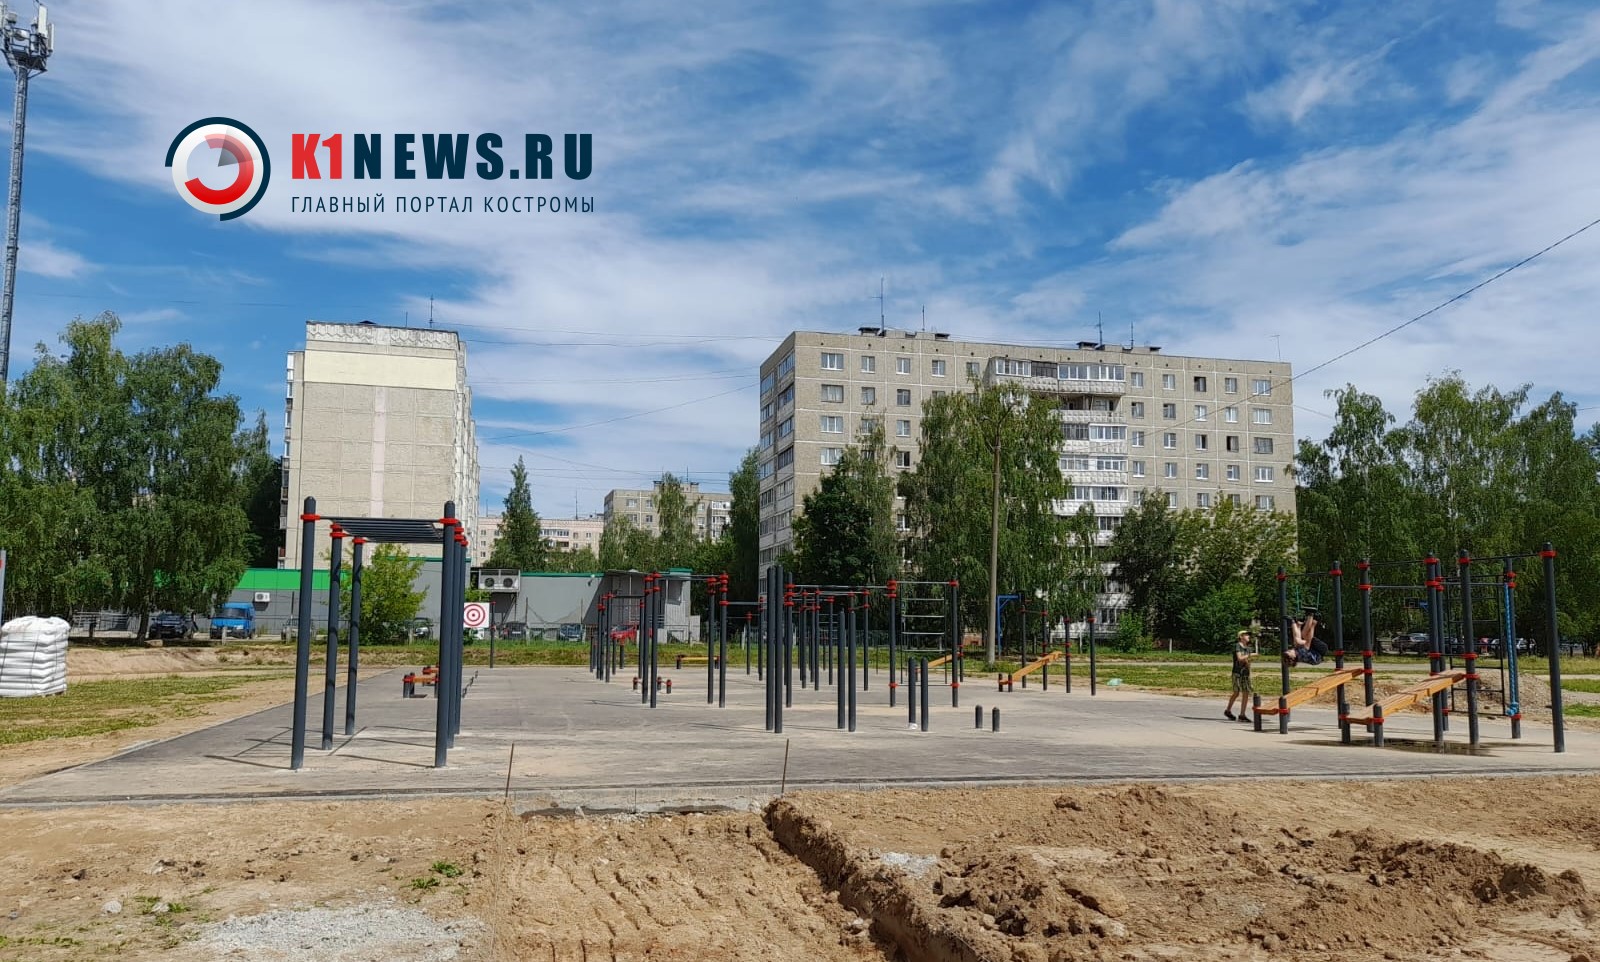 Костромичи удивлены новой спортплощадкой в центральном районе города